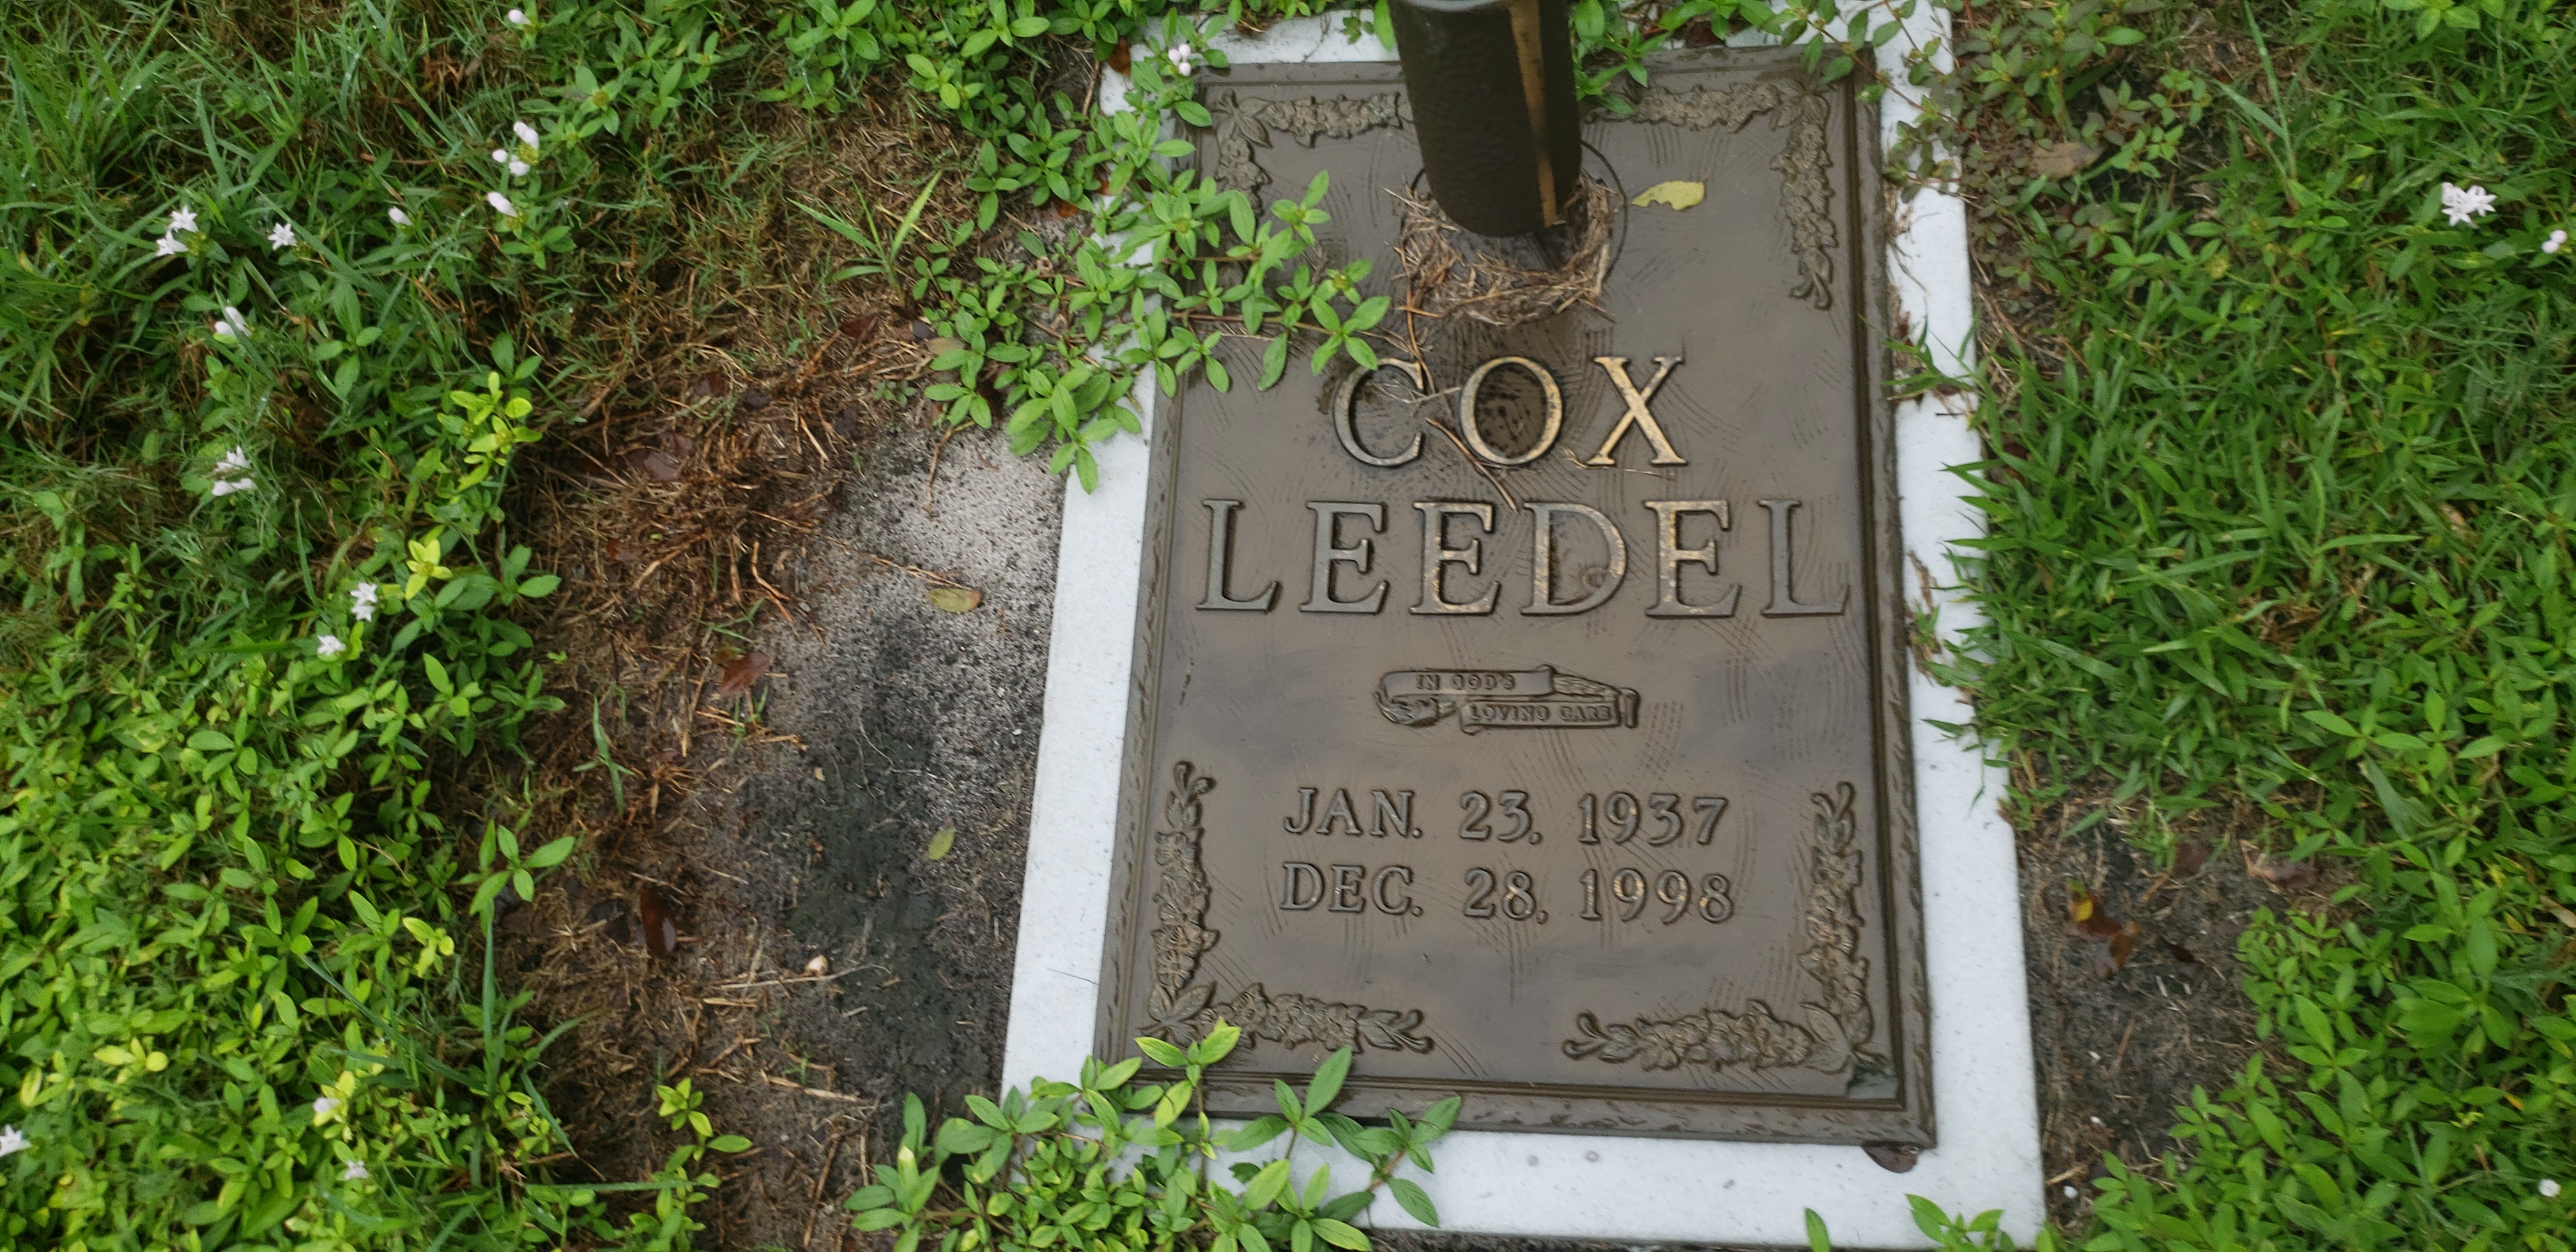 Cox Leedel